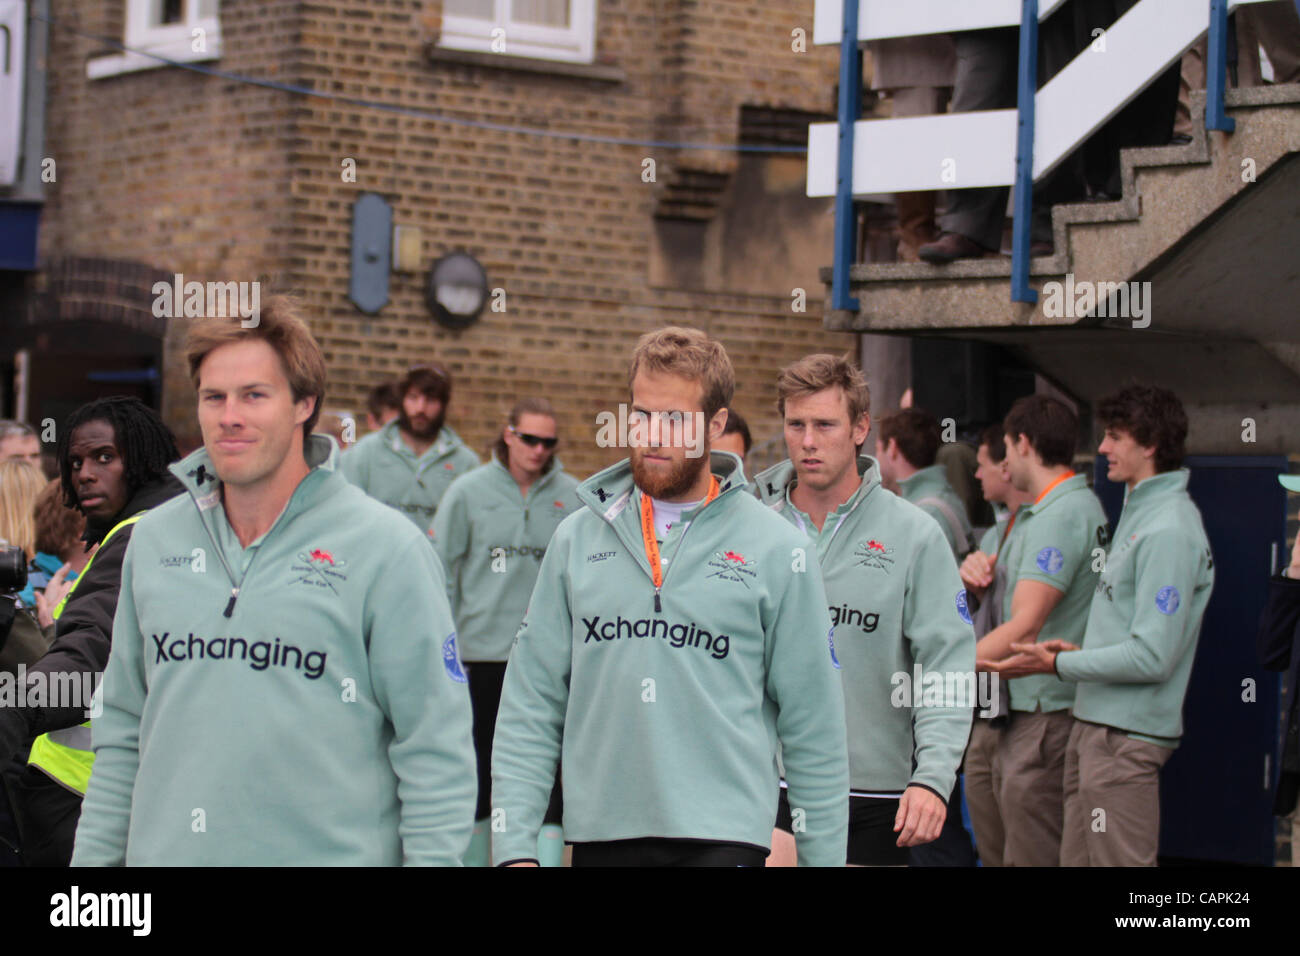 London, UK, samedi 7 avril 2012.L'équipe d'aviron de Cambridge (photo) à l'Université de Cambridge et Oxford Xchanging Boat Race sur la Tamise. Banque D'Images